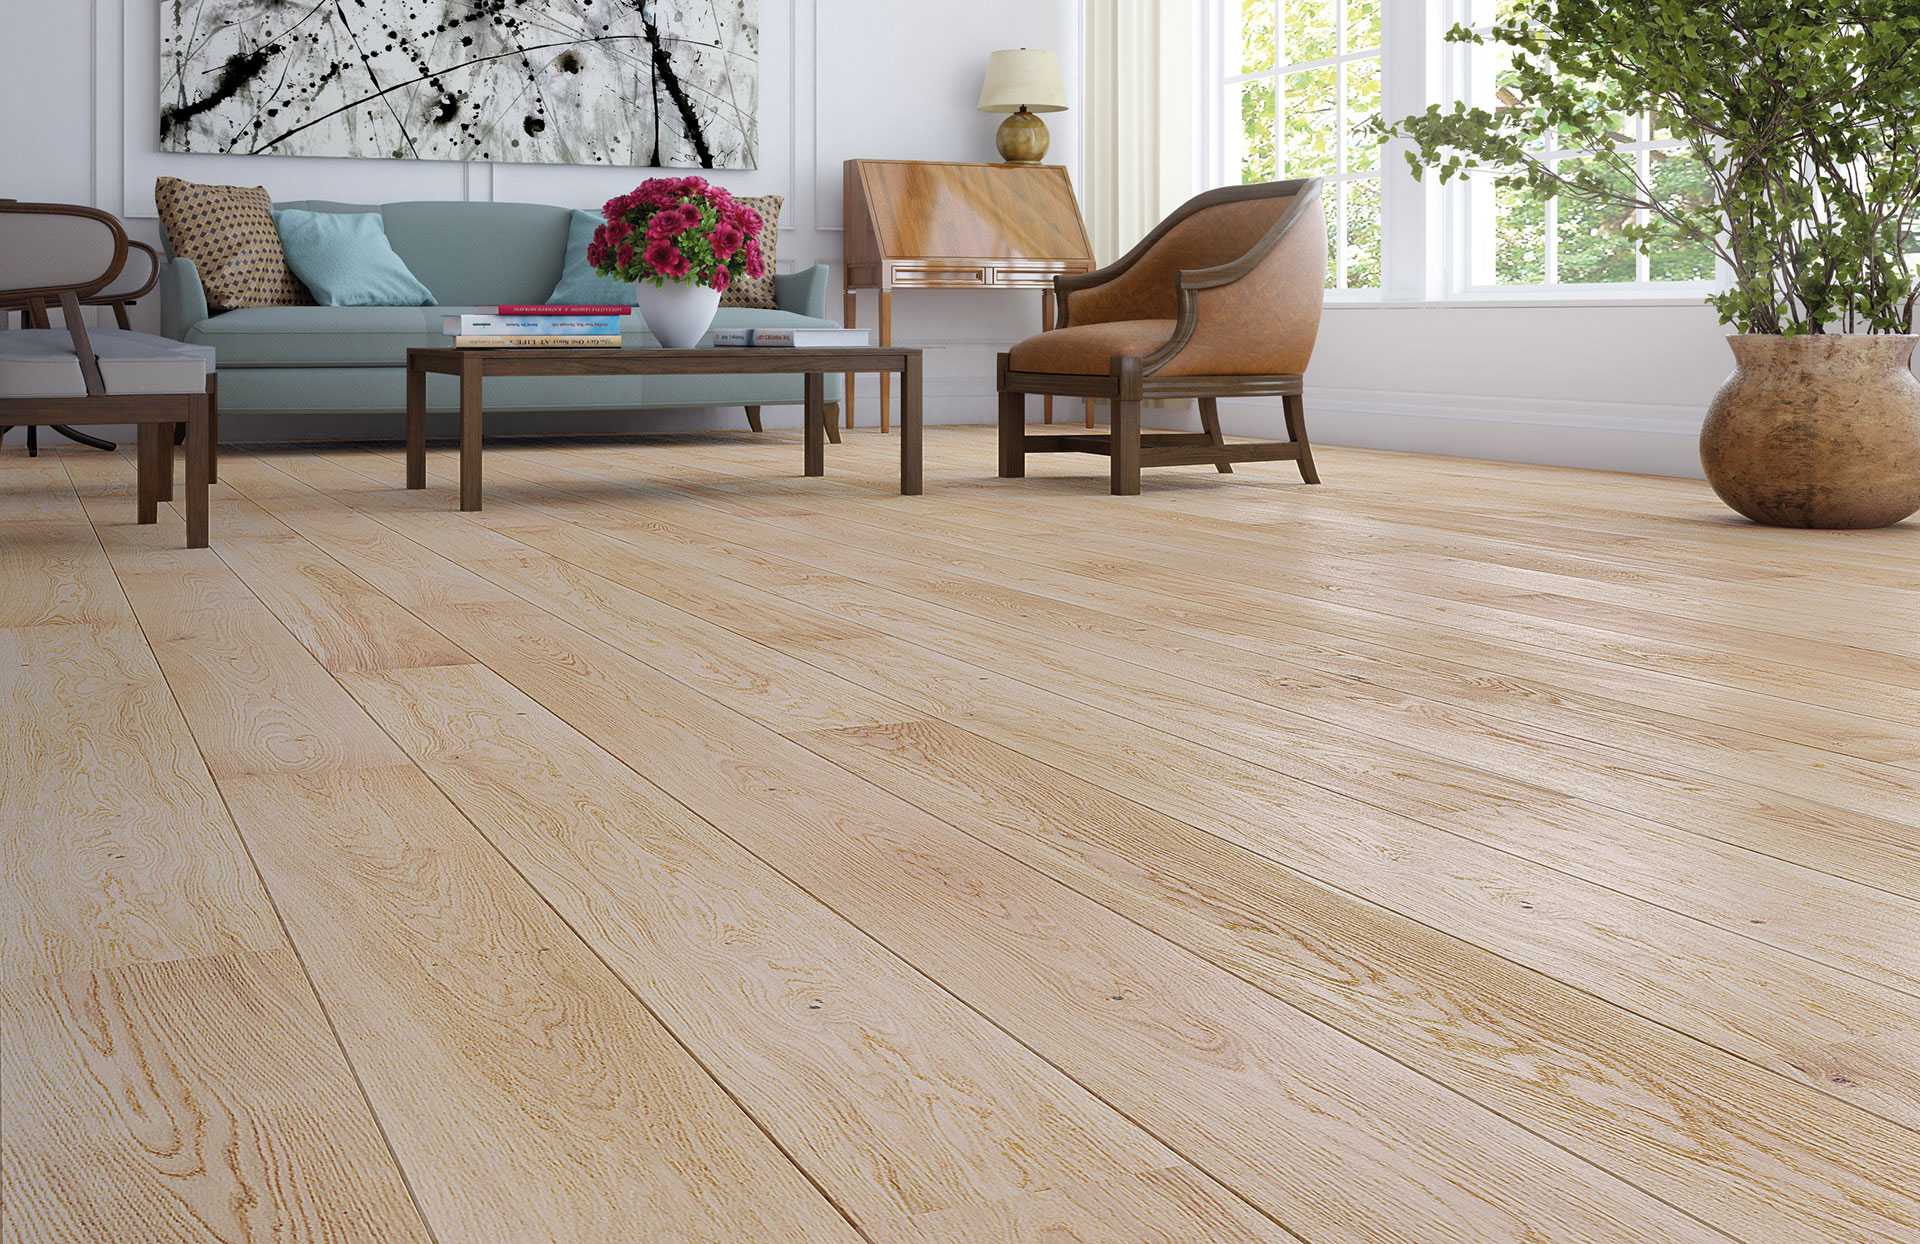 Sàn gỗ Janmi là thương hiệu sàn gỗ công nghiệp Malaysia nổi tiếng với khả năng siêu chịu nước 